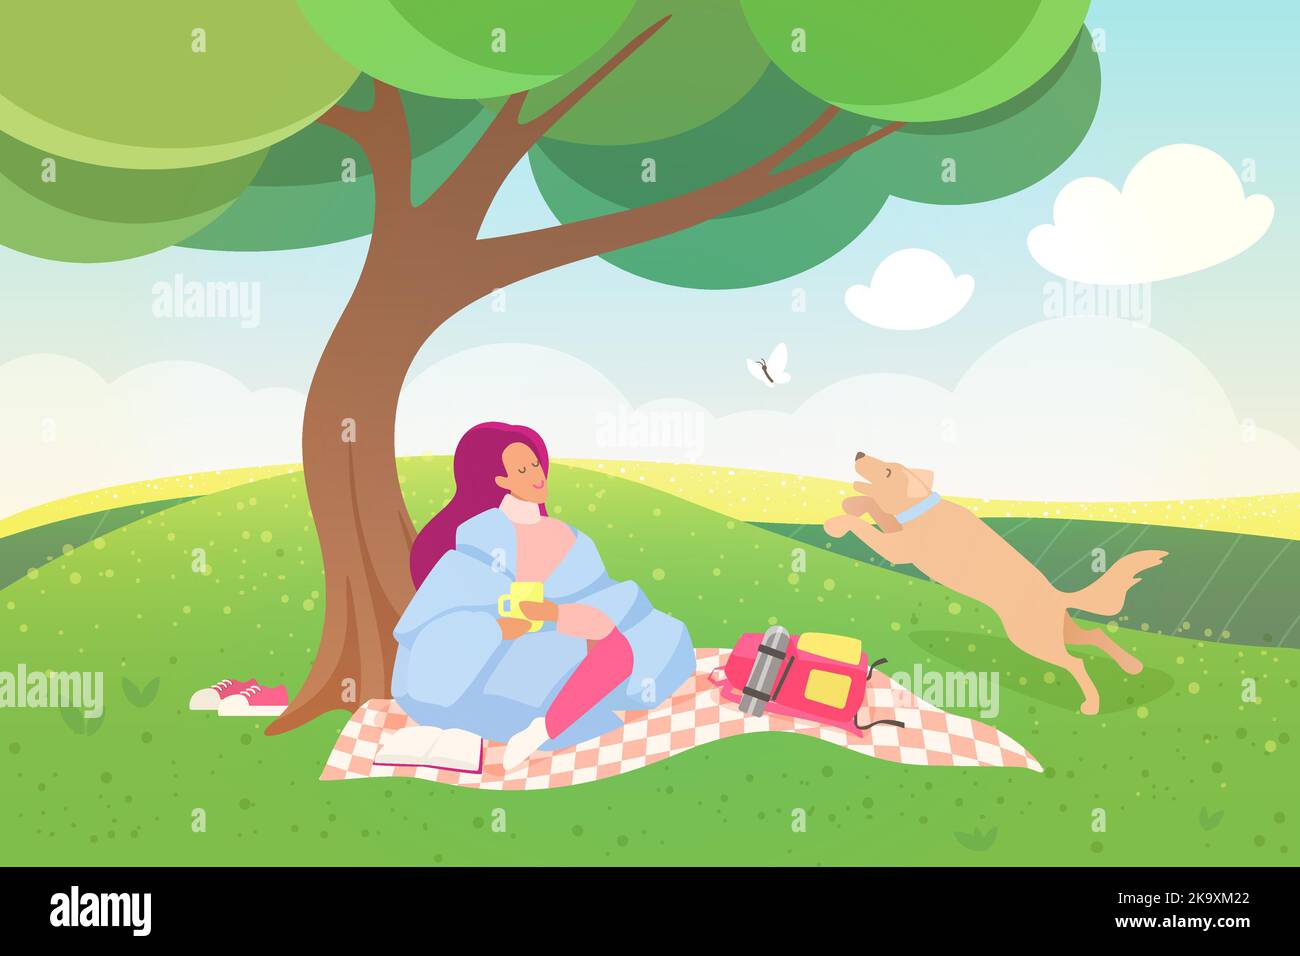 Pique-nique extérieur sur l'illustration vectorielle du week-end. Dessin animé bonne scène de loisirs avec fille enveloppée dans une couverture chaude assis sur le tapis sur pelouse verte herbe sous l'arbre, chien jouant avec le fond de papillon Illustration de Vecteur